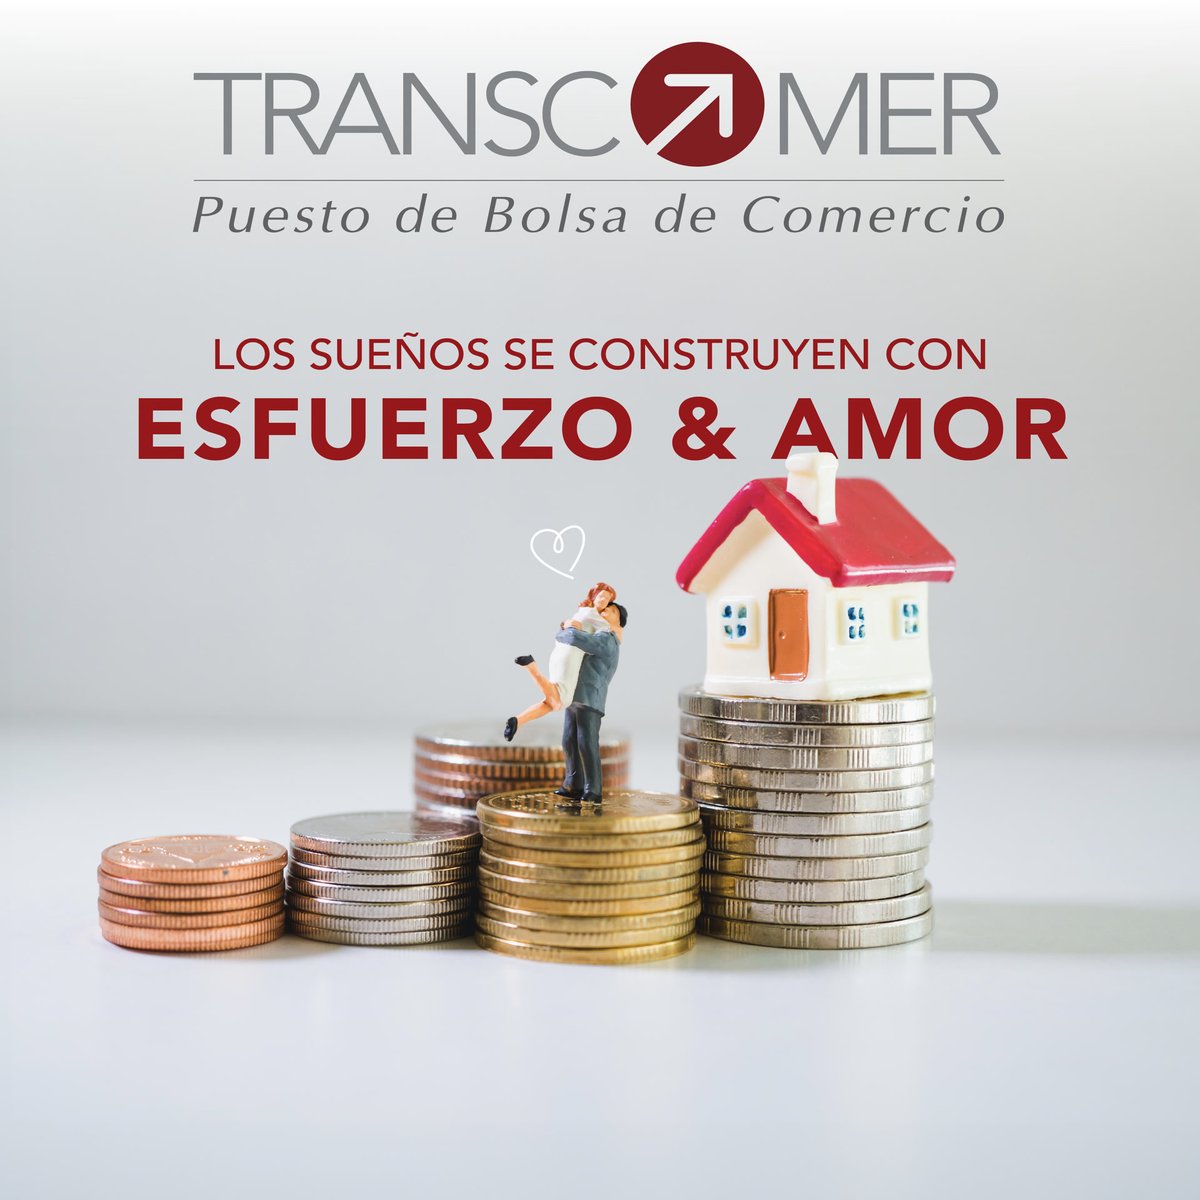 Invierta en el amor duradero y en propiedades que perduren. 

#Transcomer #Planificacion #Finanzas #InversionInmobiliaria